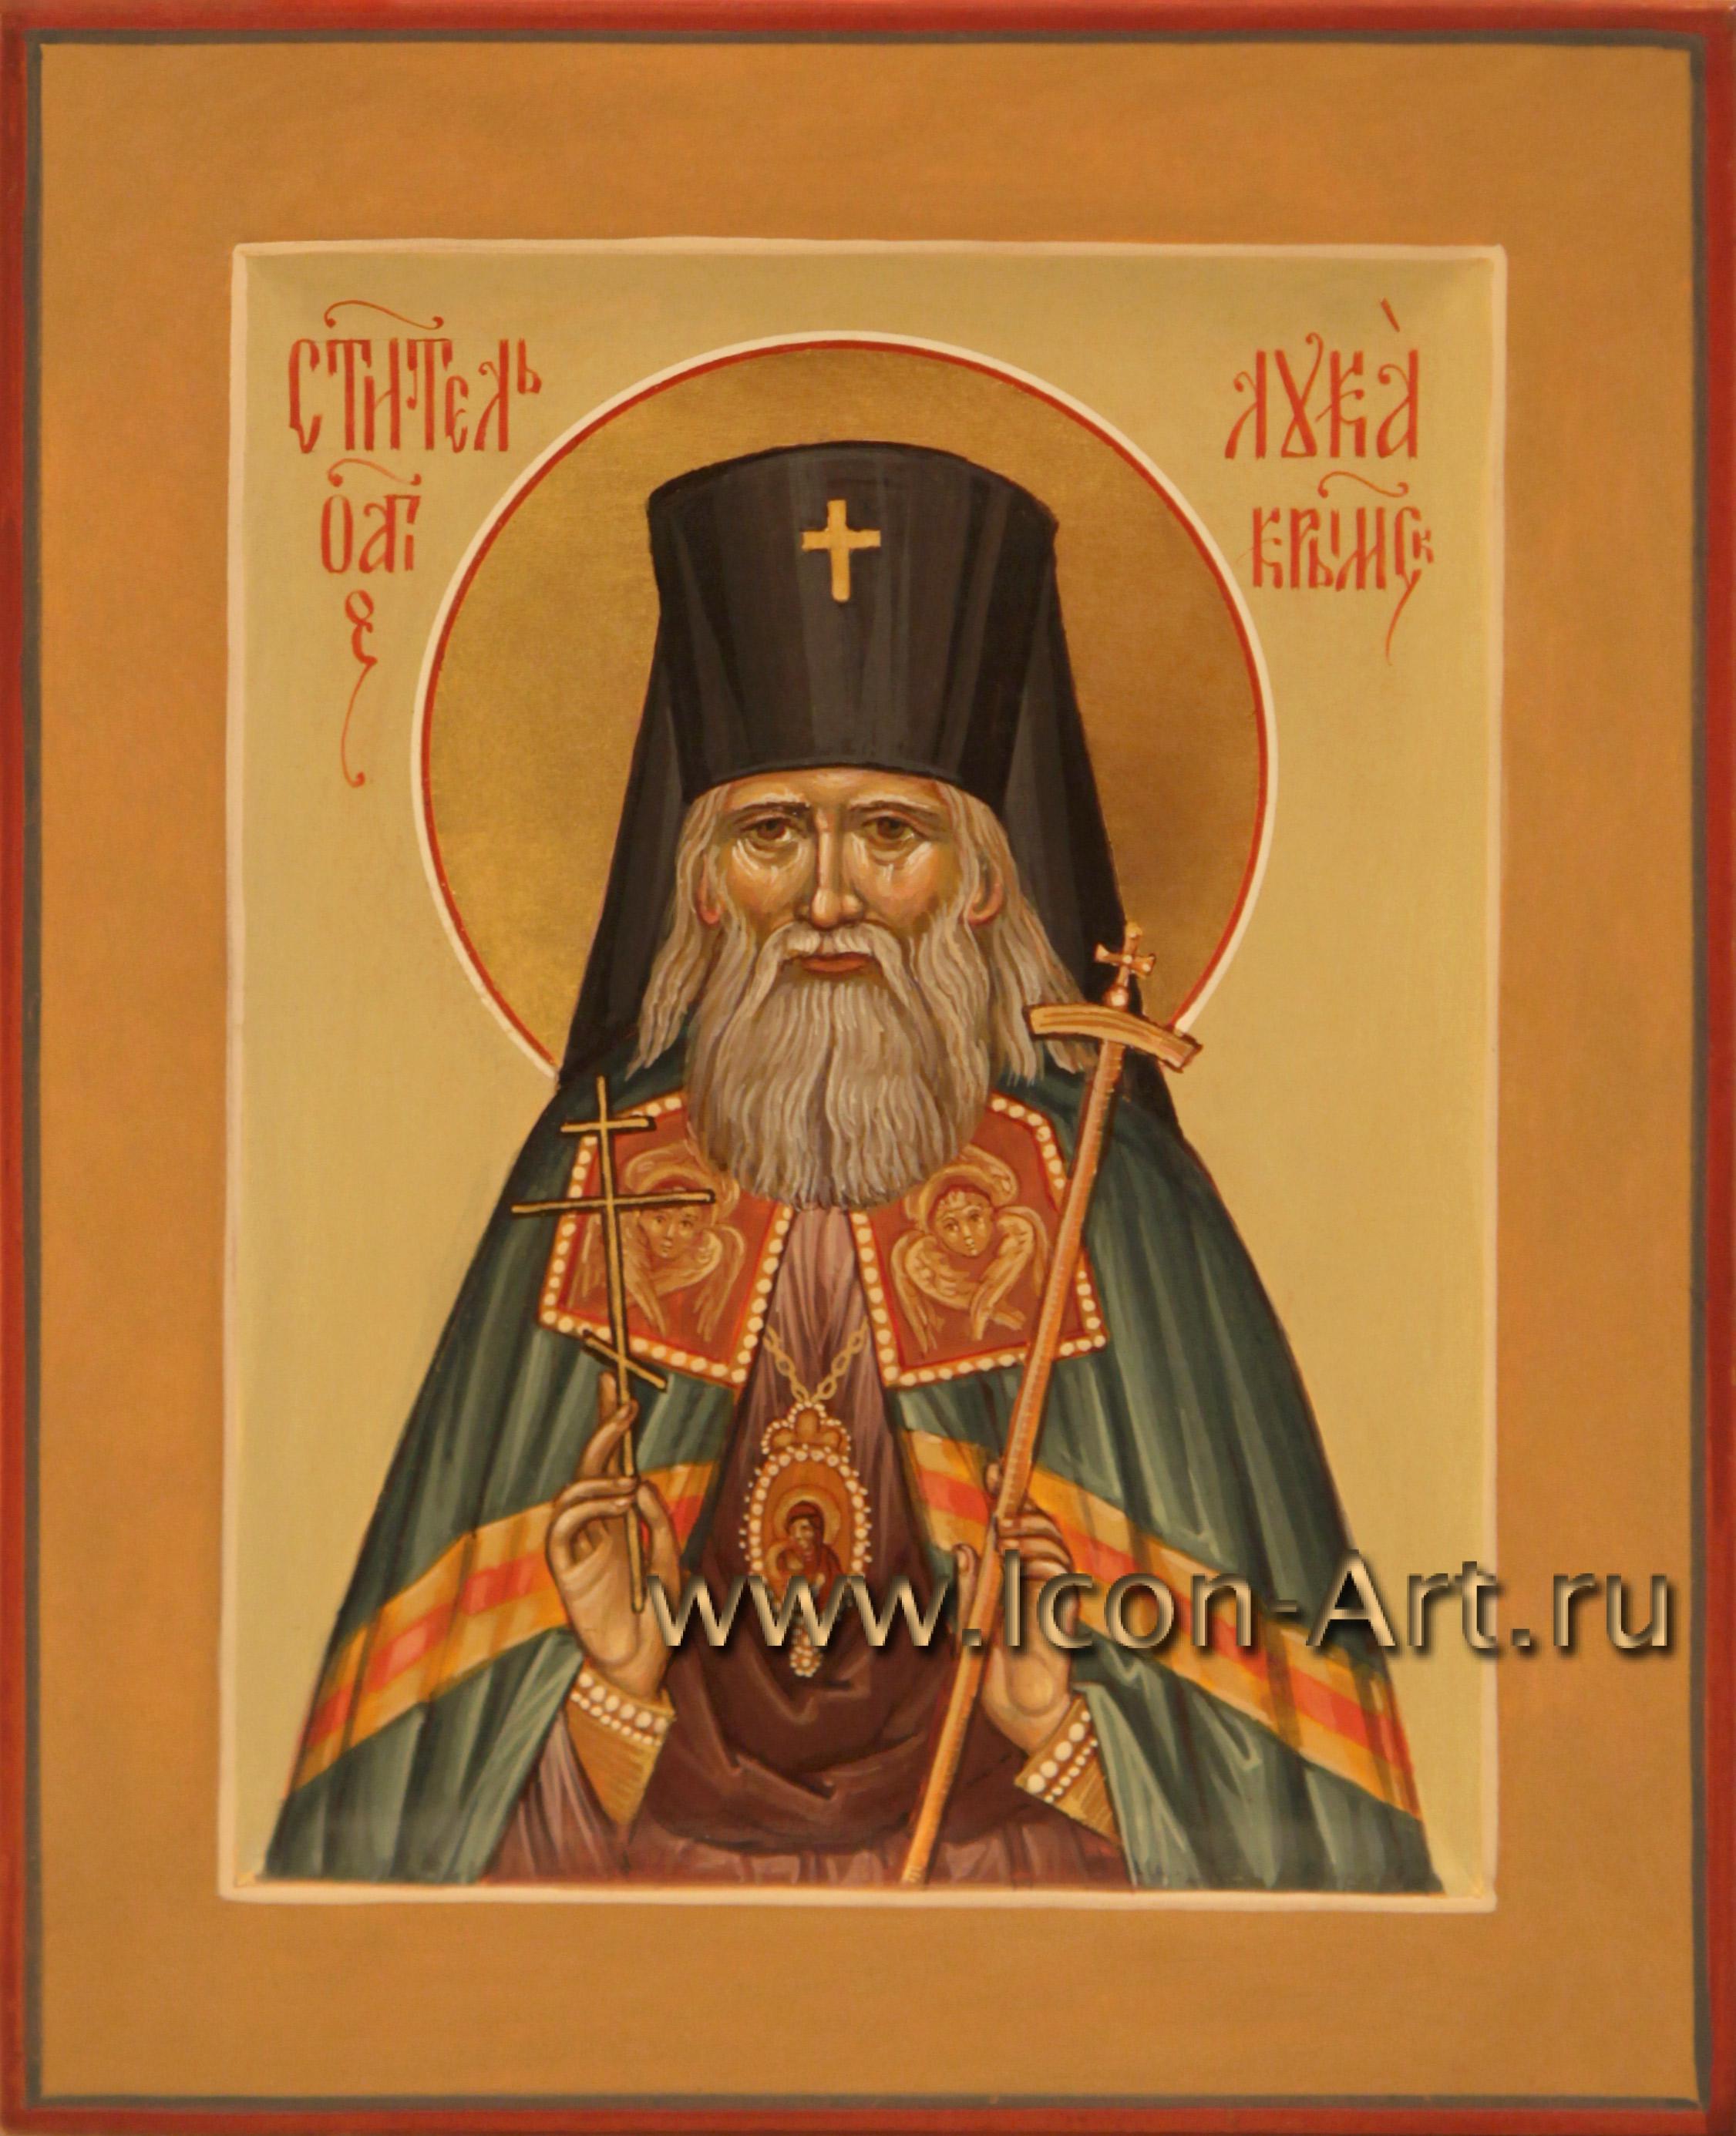 Акафист луке архиепископу крымскому святителю и исповеднику. Нектарий Оптинский икона.